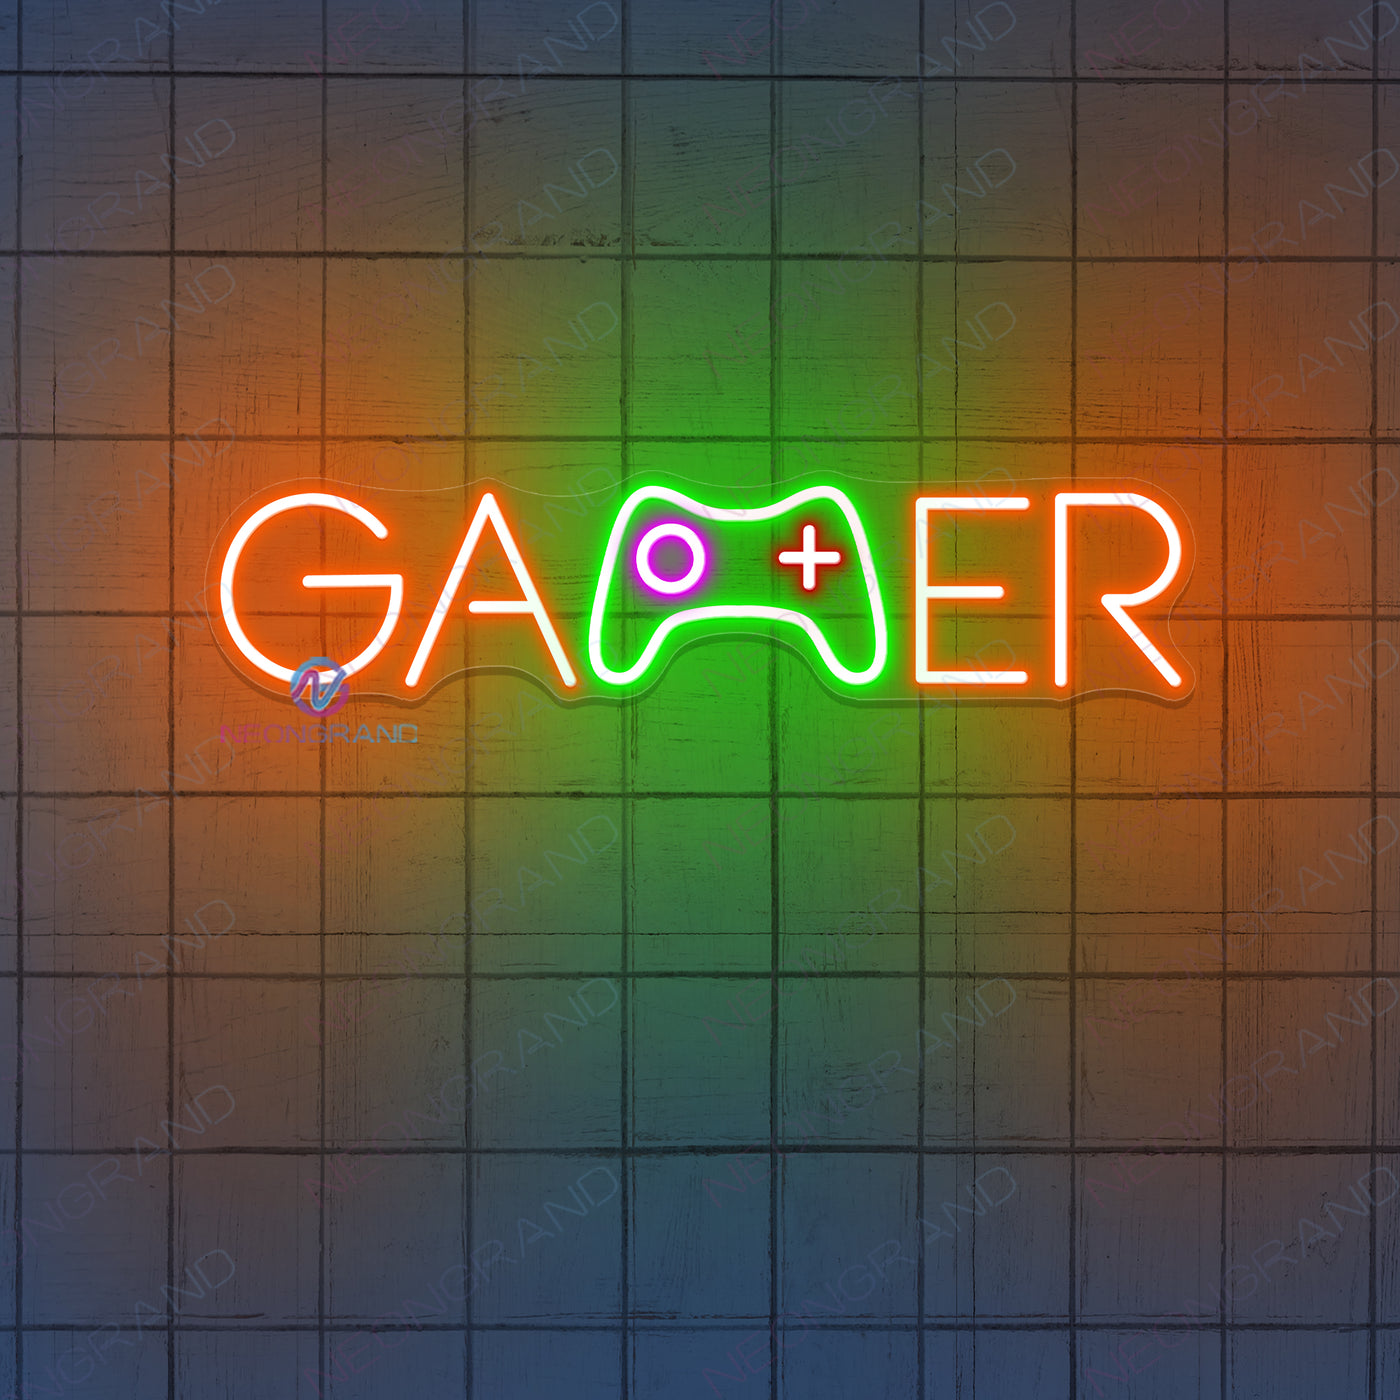 Gamer Neon Sign Gaming Room Led Light